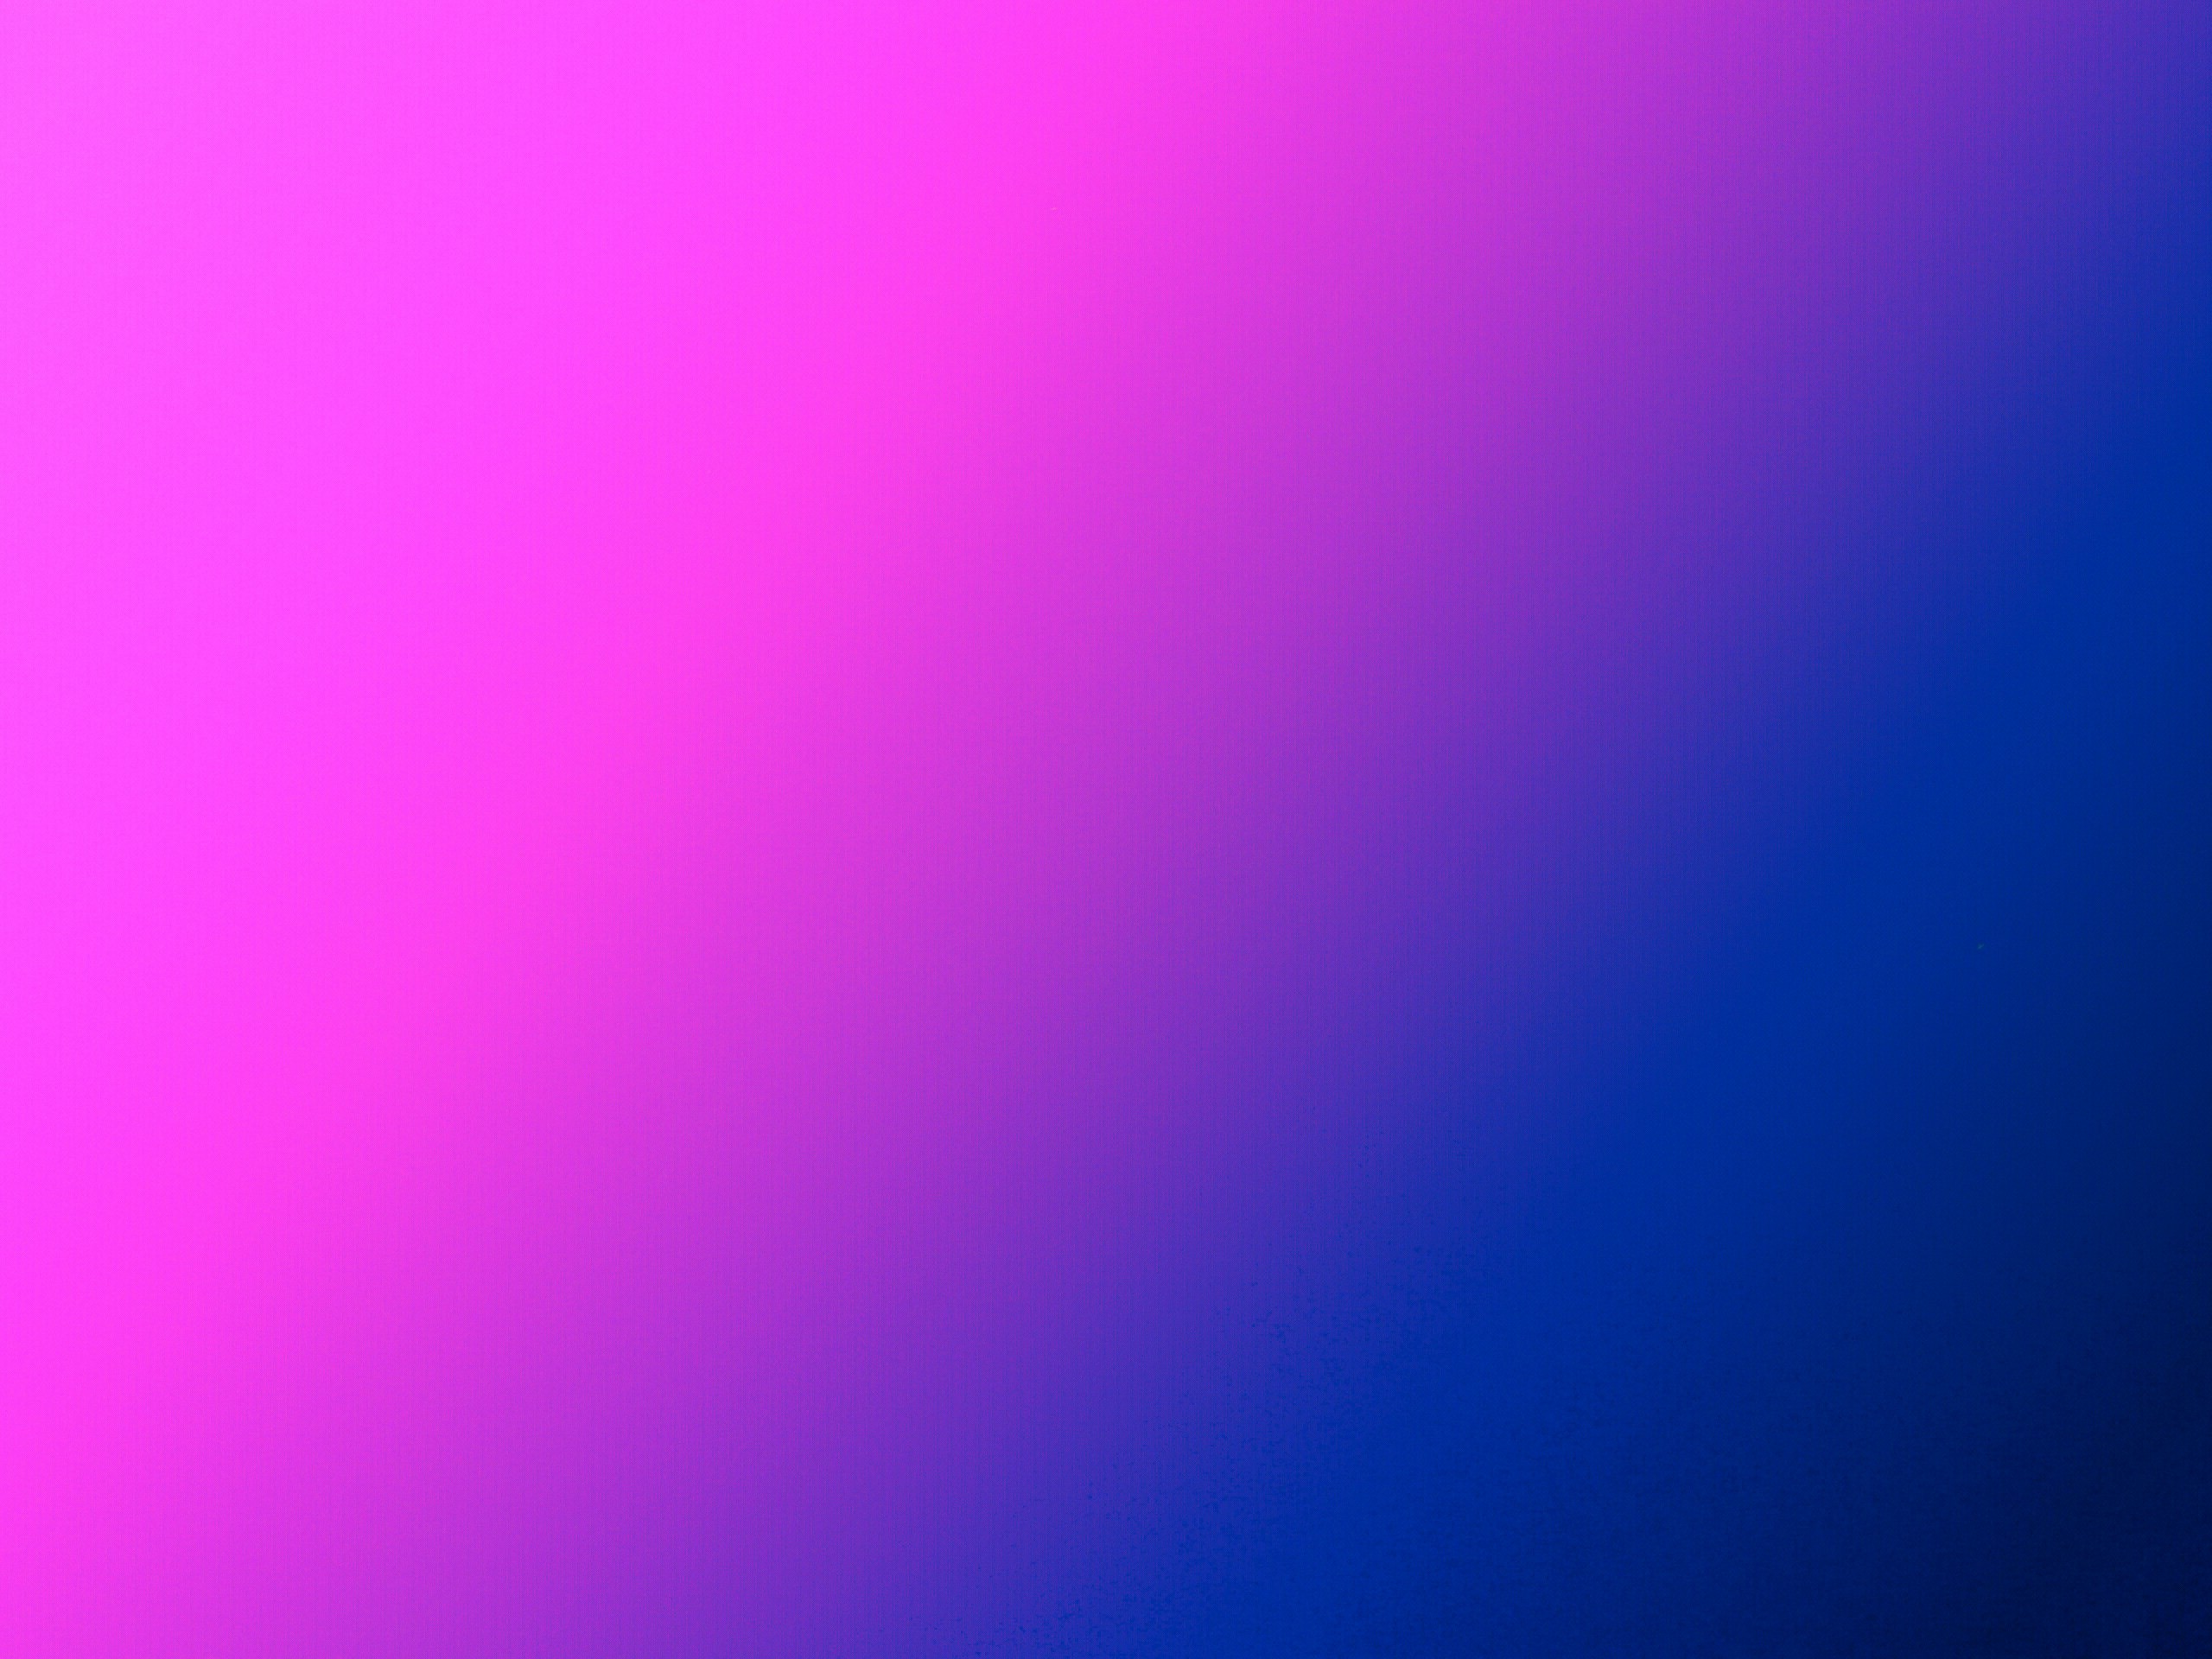 2560x1920 Background pink half blue.